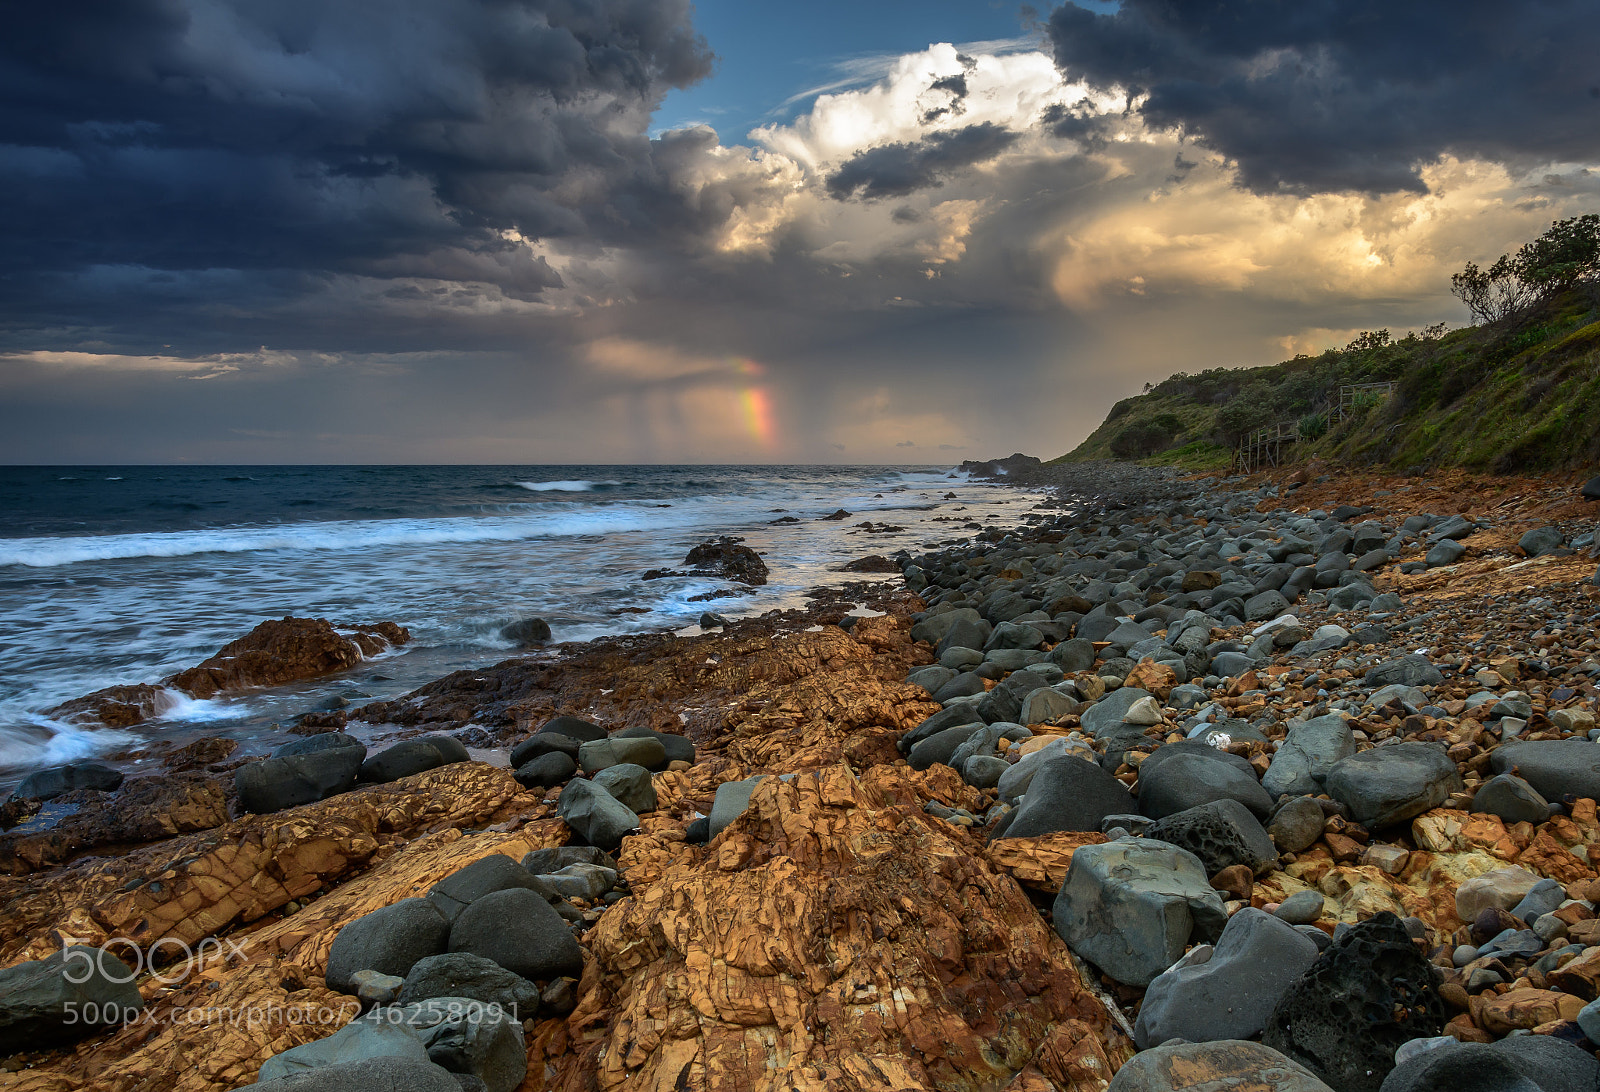 Nikon D7500 sample photo. Evening storm over saltwater photography